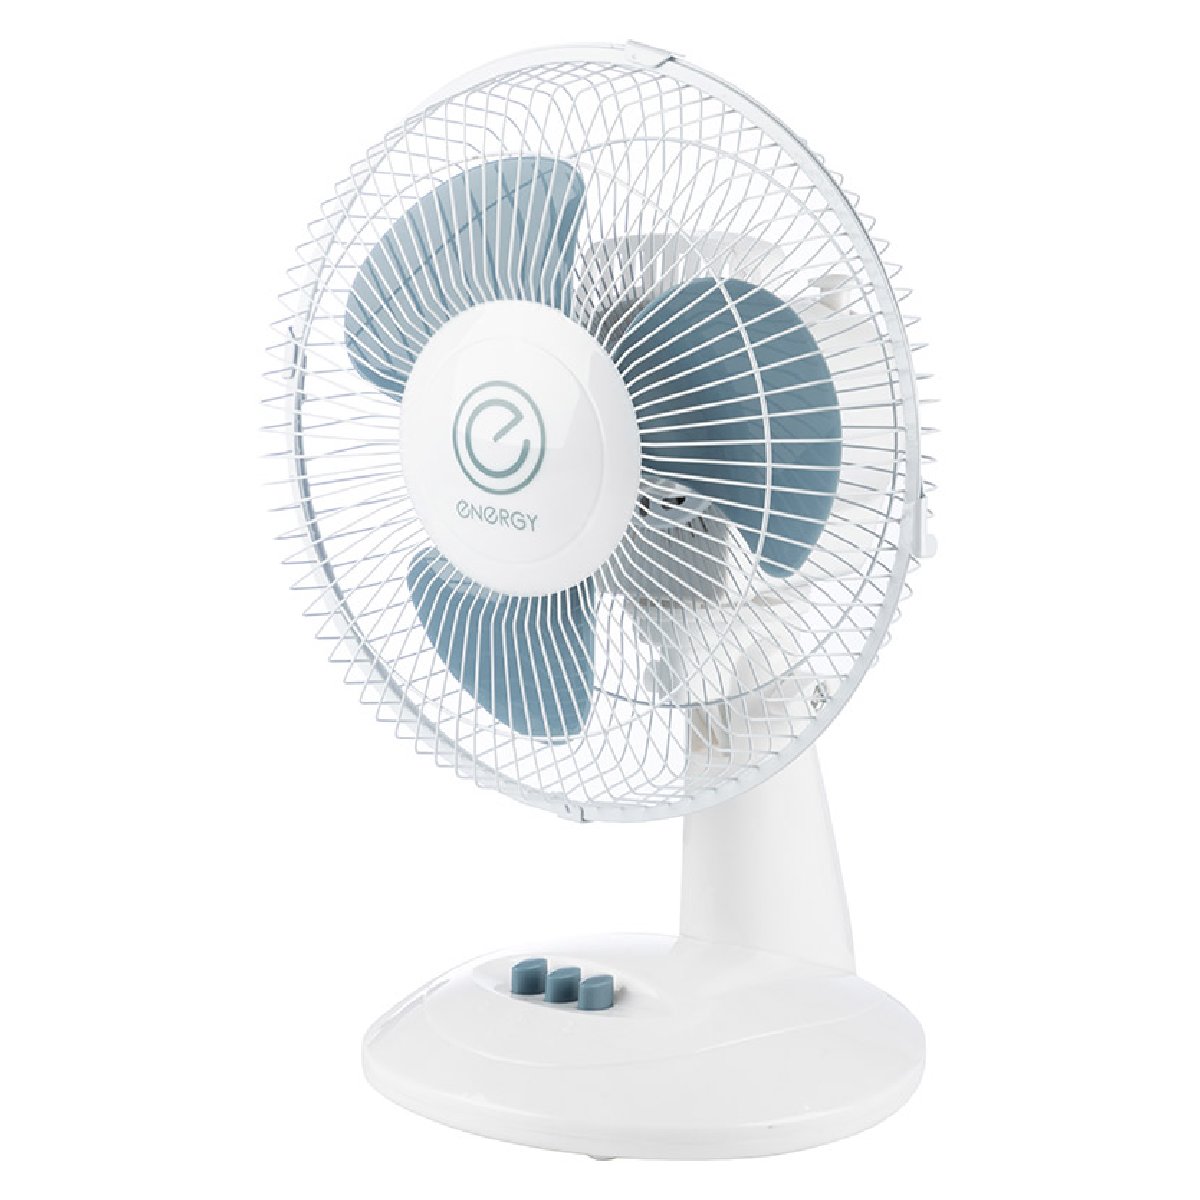 Вентилятор настольный Energy EN-0605 диаметр 23см, 30 Вт, 2 скорости (003716)Купить